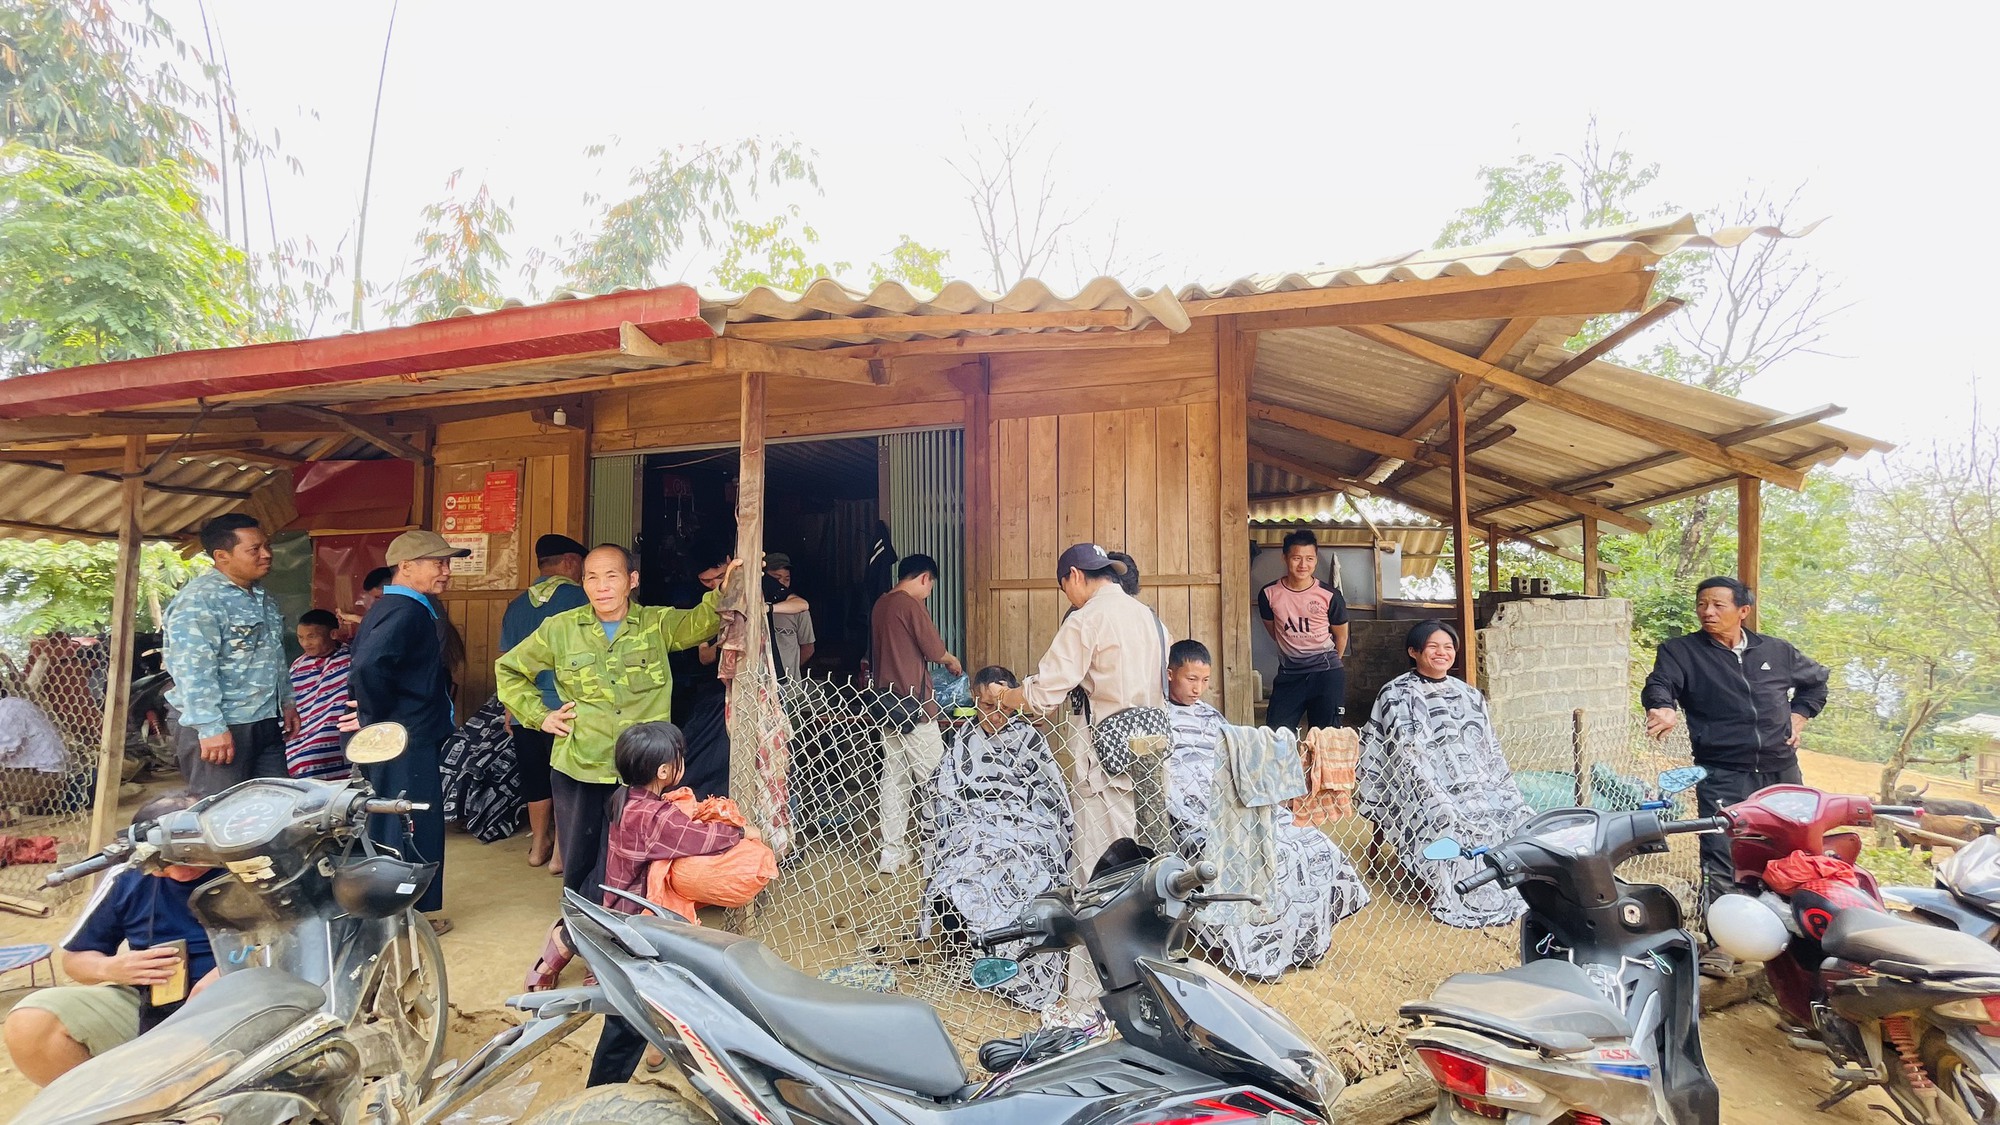 Nhóm của anh Việt kết hợp “shopping 0 đồng” với cắt tóc miễn phí trong các chuyến hành trình lên bản